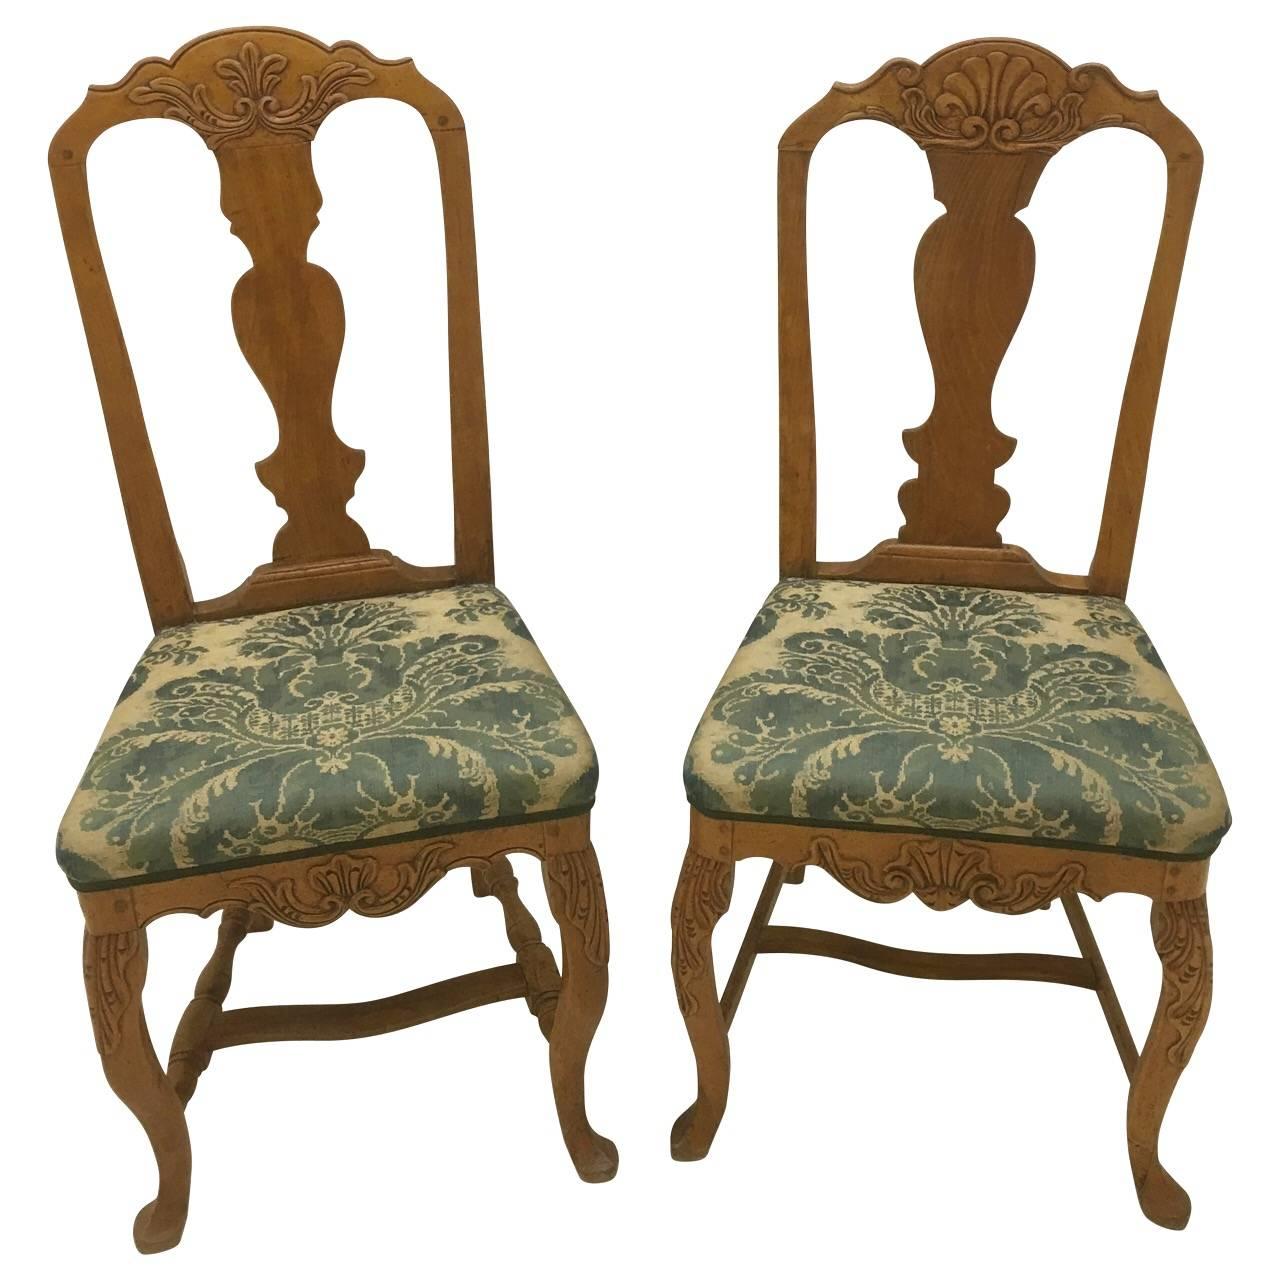 Superbe paire de chaises rococo originales du 18e siècle.